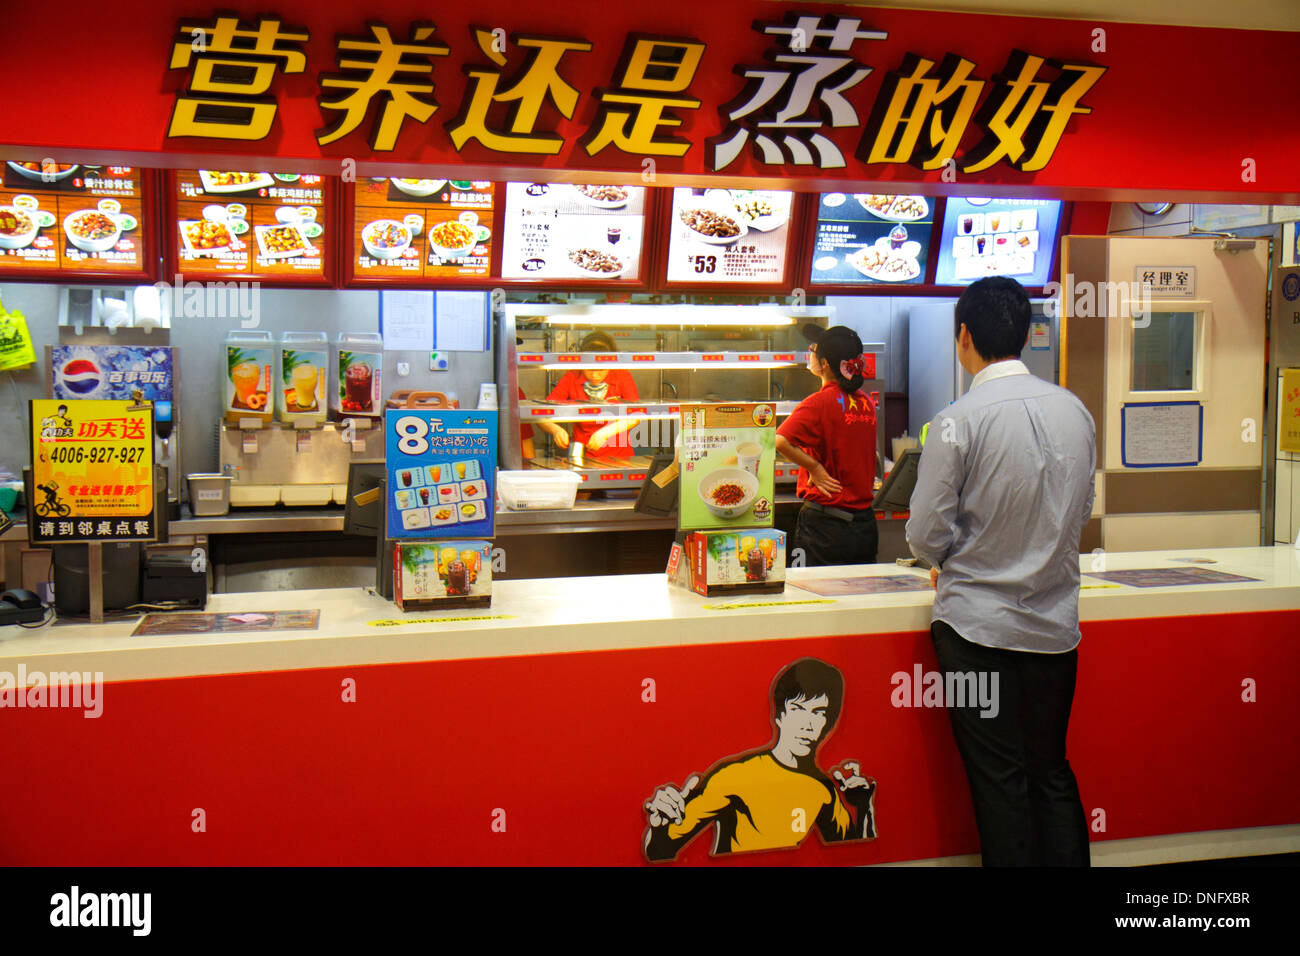 Beijing Chine, chinois, les centres commerciaux à Oriental Plaza, Bruce Lee, restaurant restaurants repas café cafés, cuisine, nourriture, comptoir, menu, caractères chinois Banque D'Images